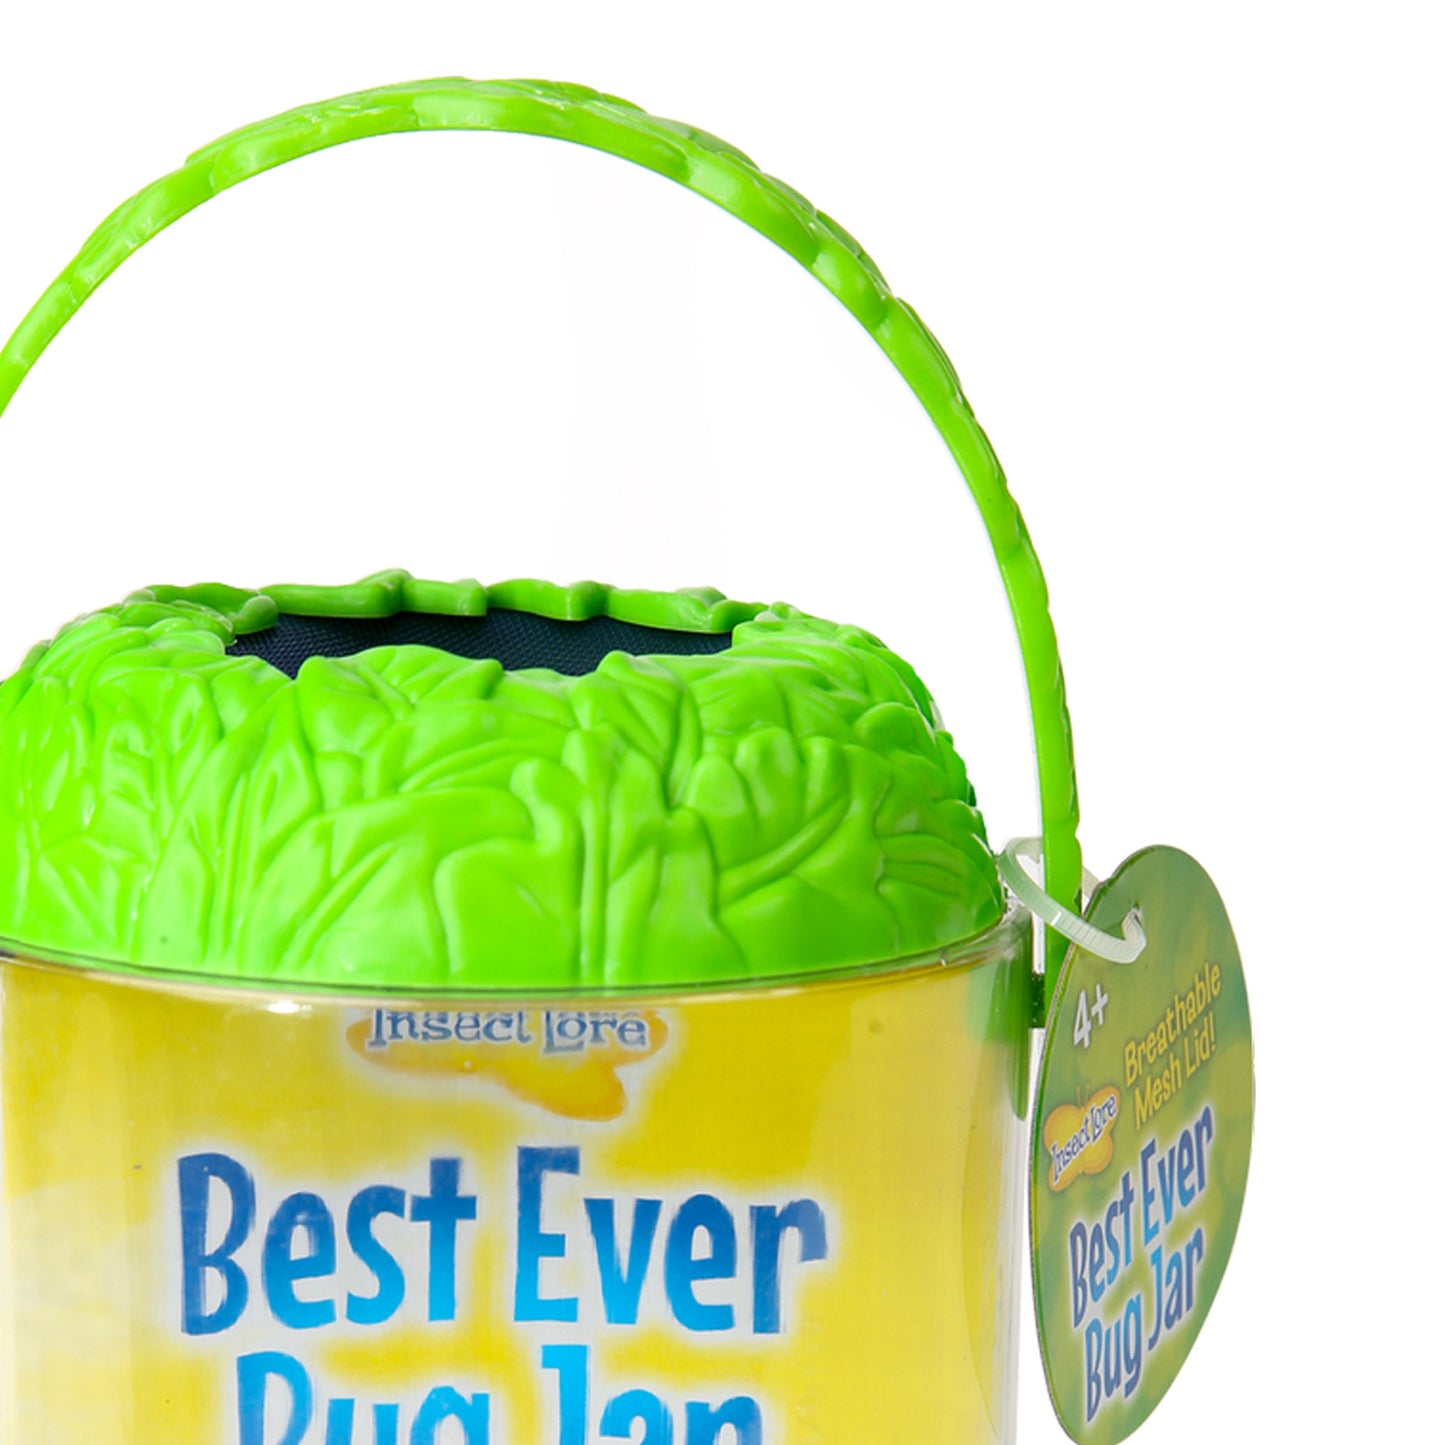 Best Ever Bug Jar, Pack of 3